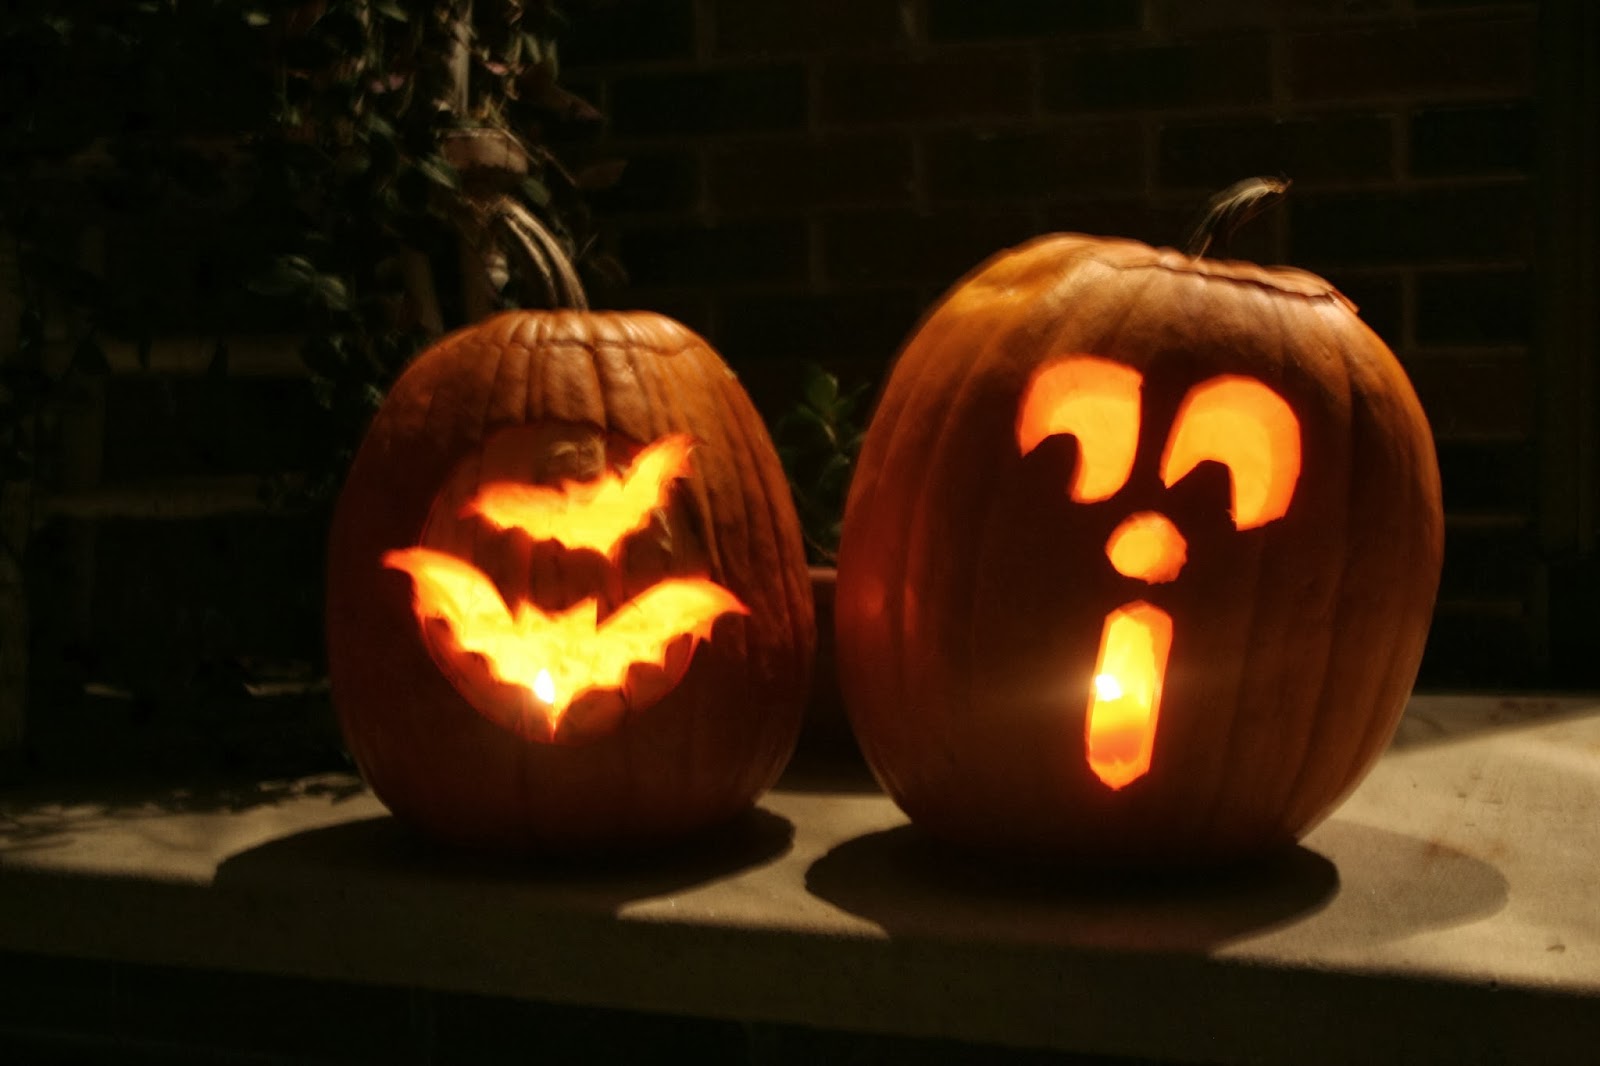 Pumpkin Carving Ideas For Halloween 2018 Jack O Lantern Pumpkins 2018